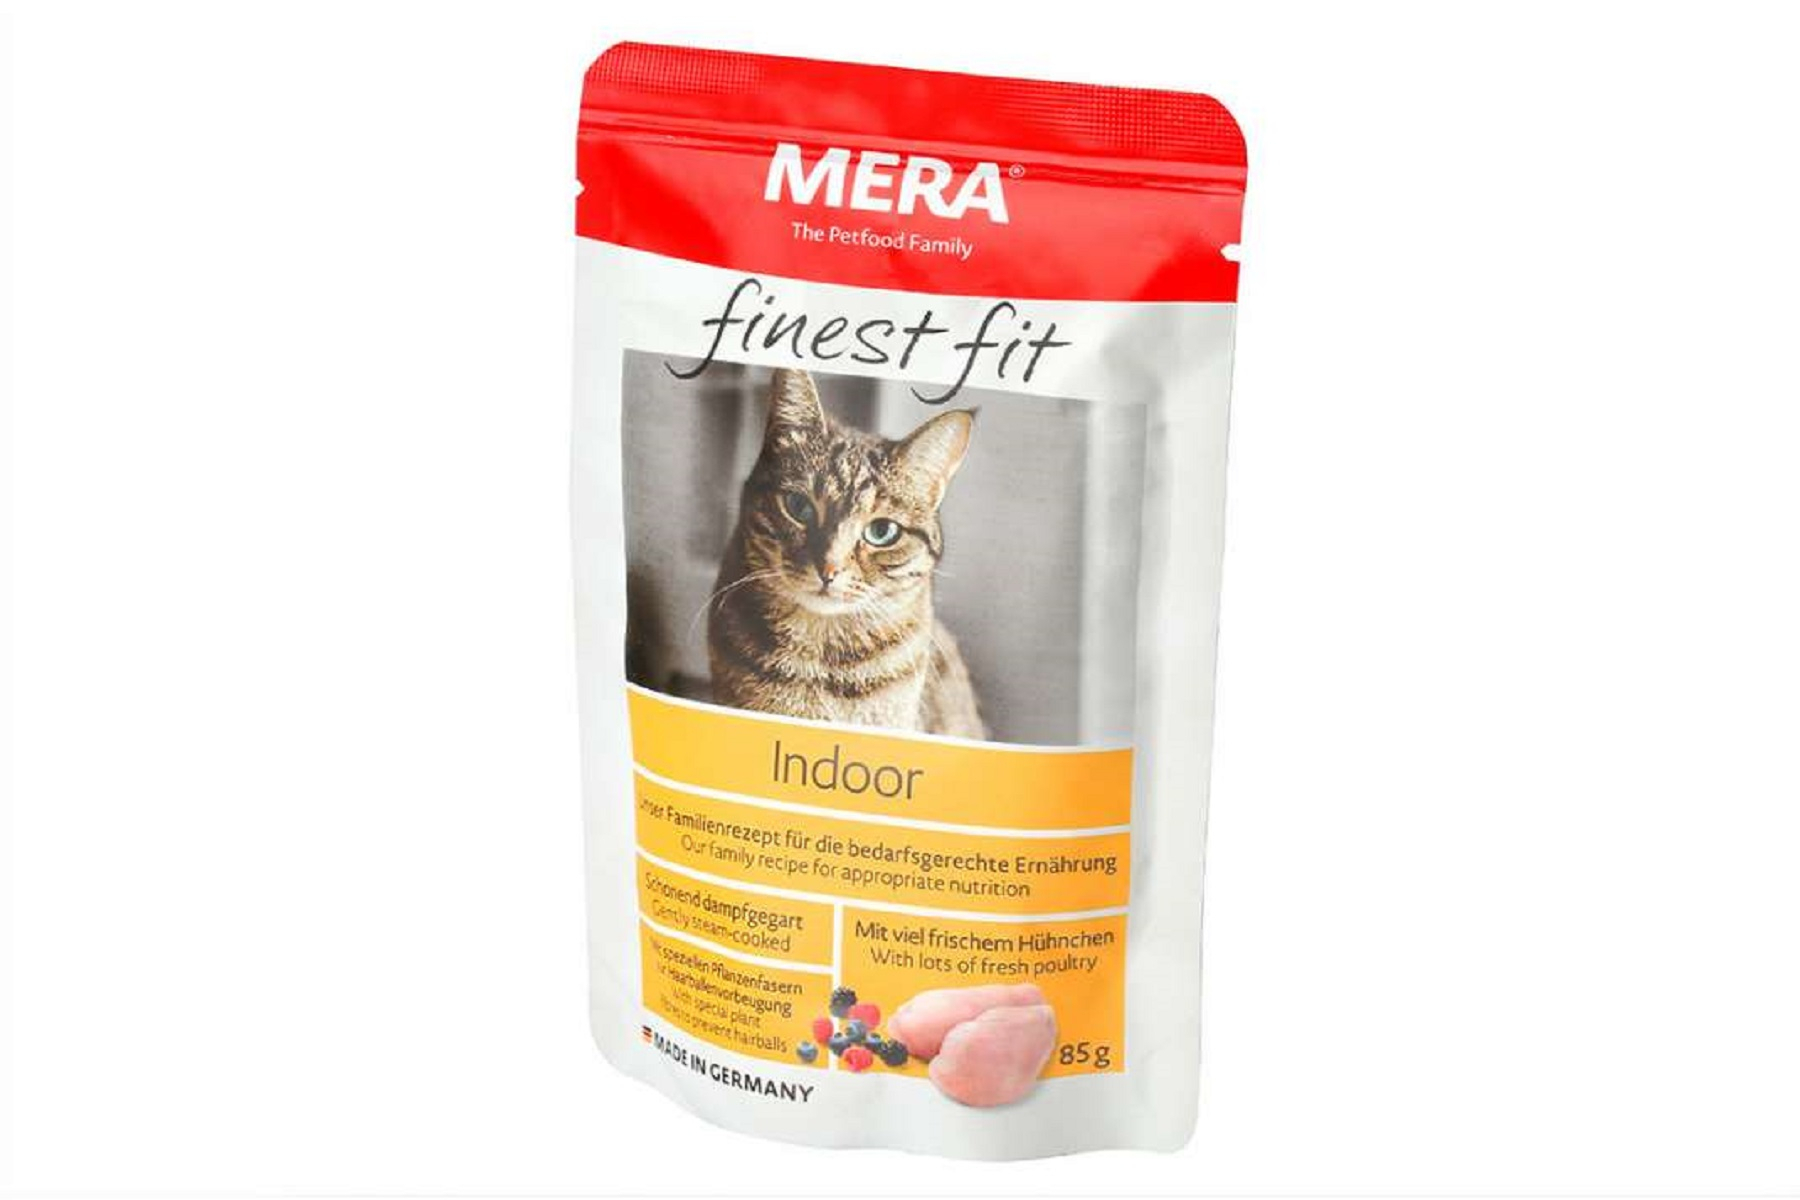 MERA Finest Fit Indoor Comida húmeda para gatos de interior aves de corral